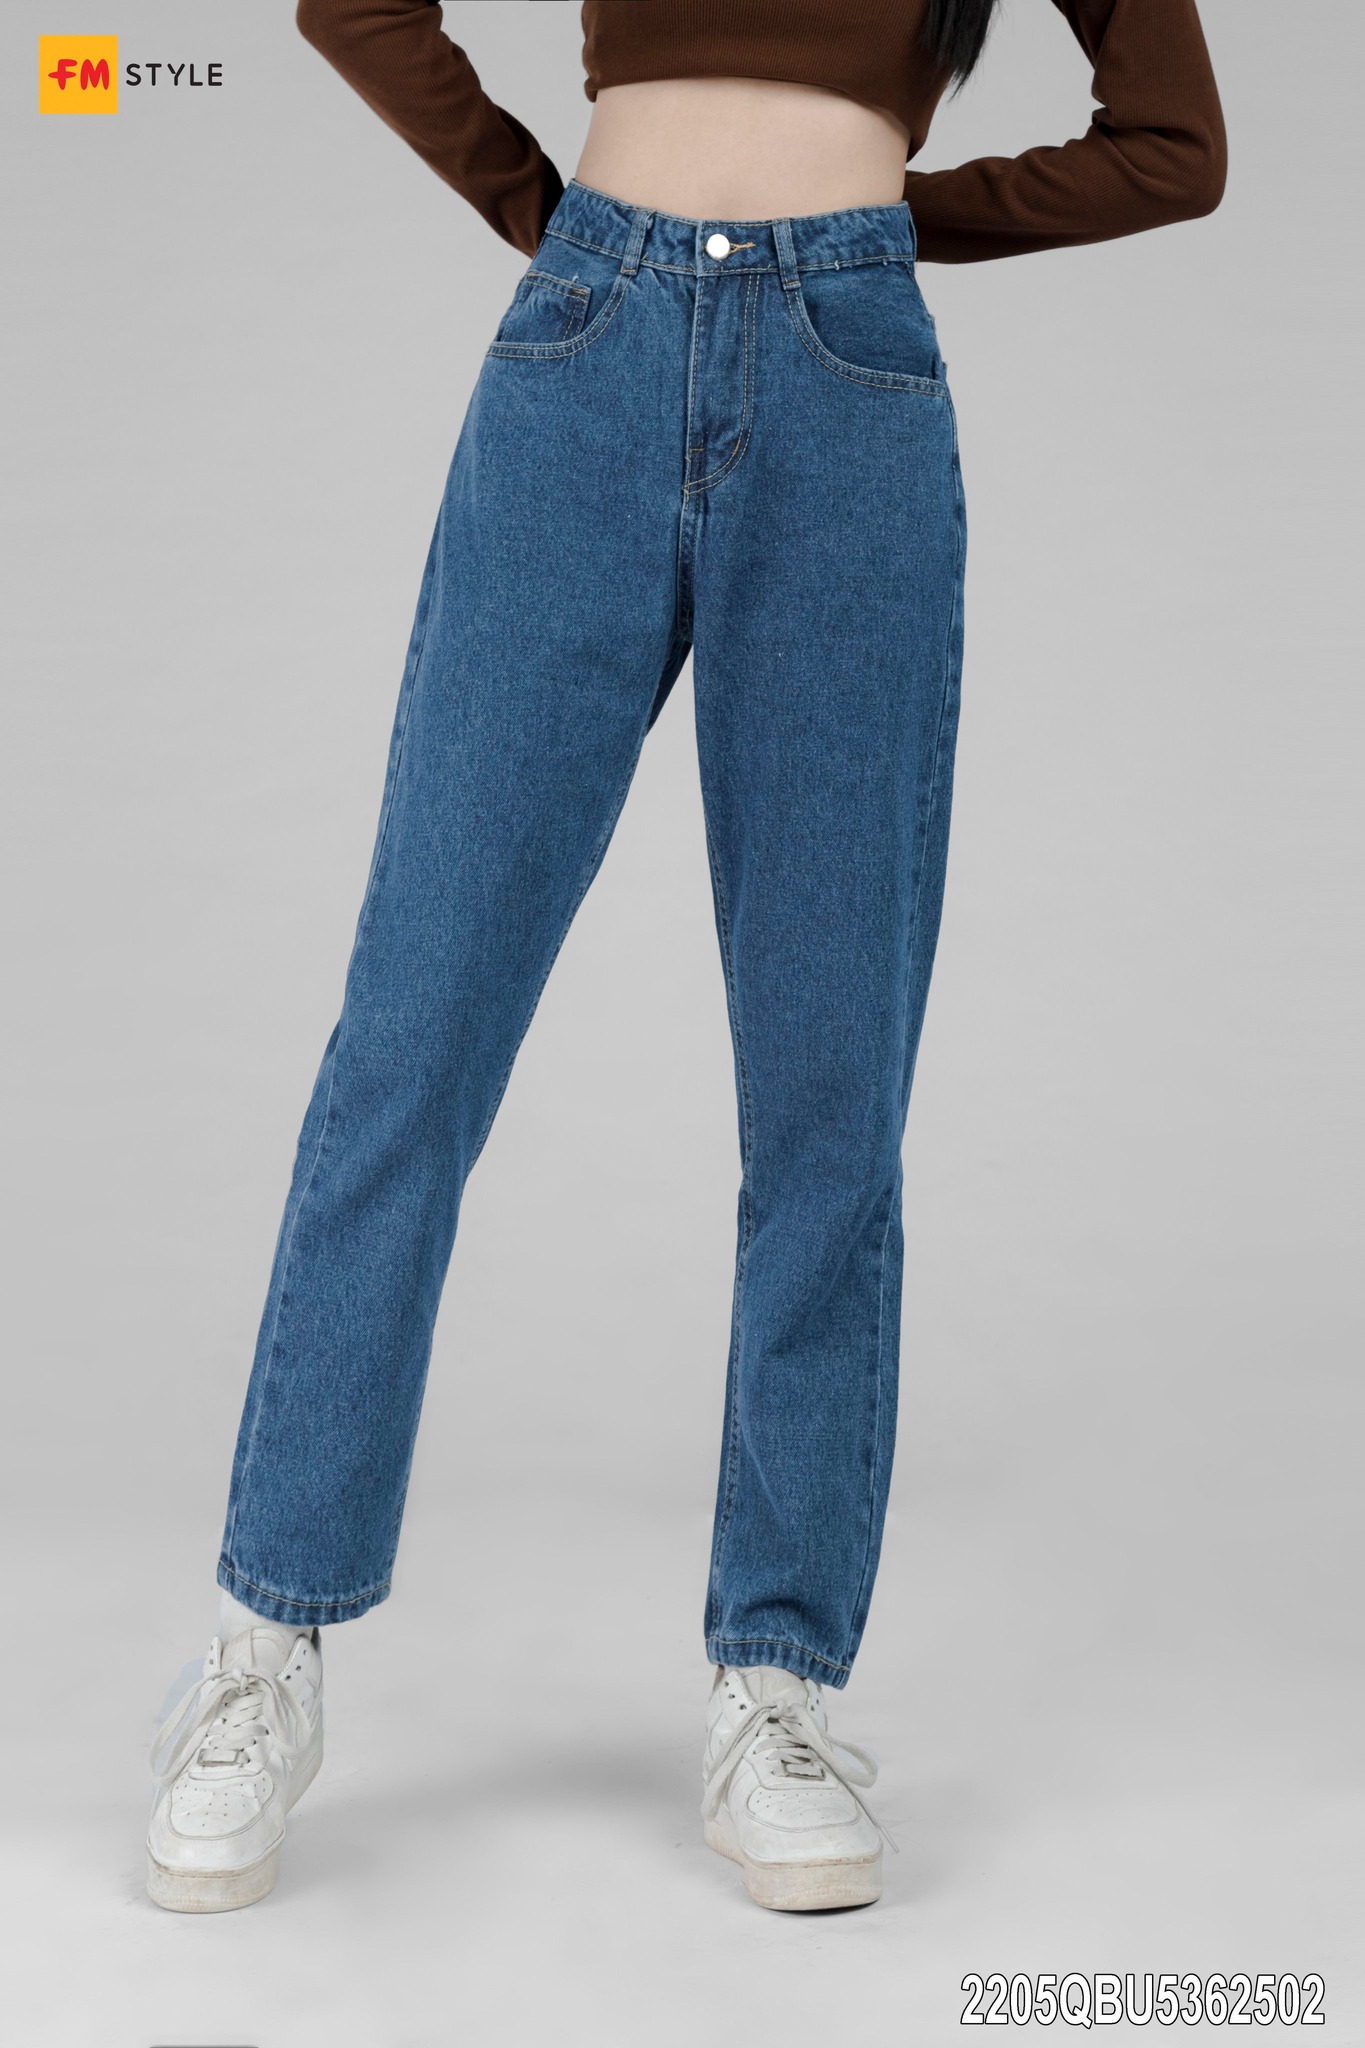 Quần jeans nữ baggy đơn giản nhưng không kém phần sang trọng